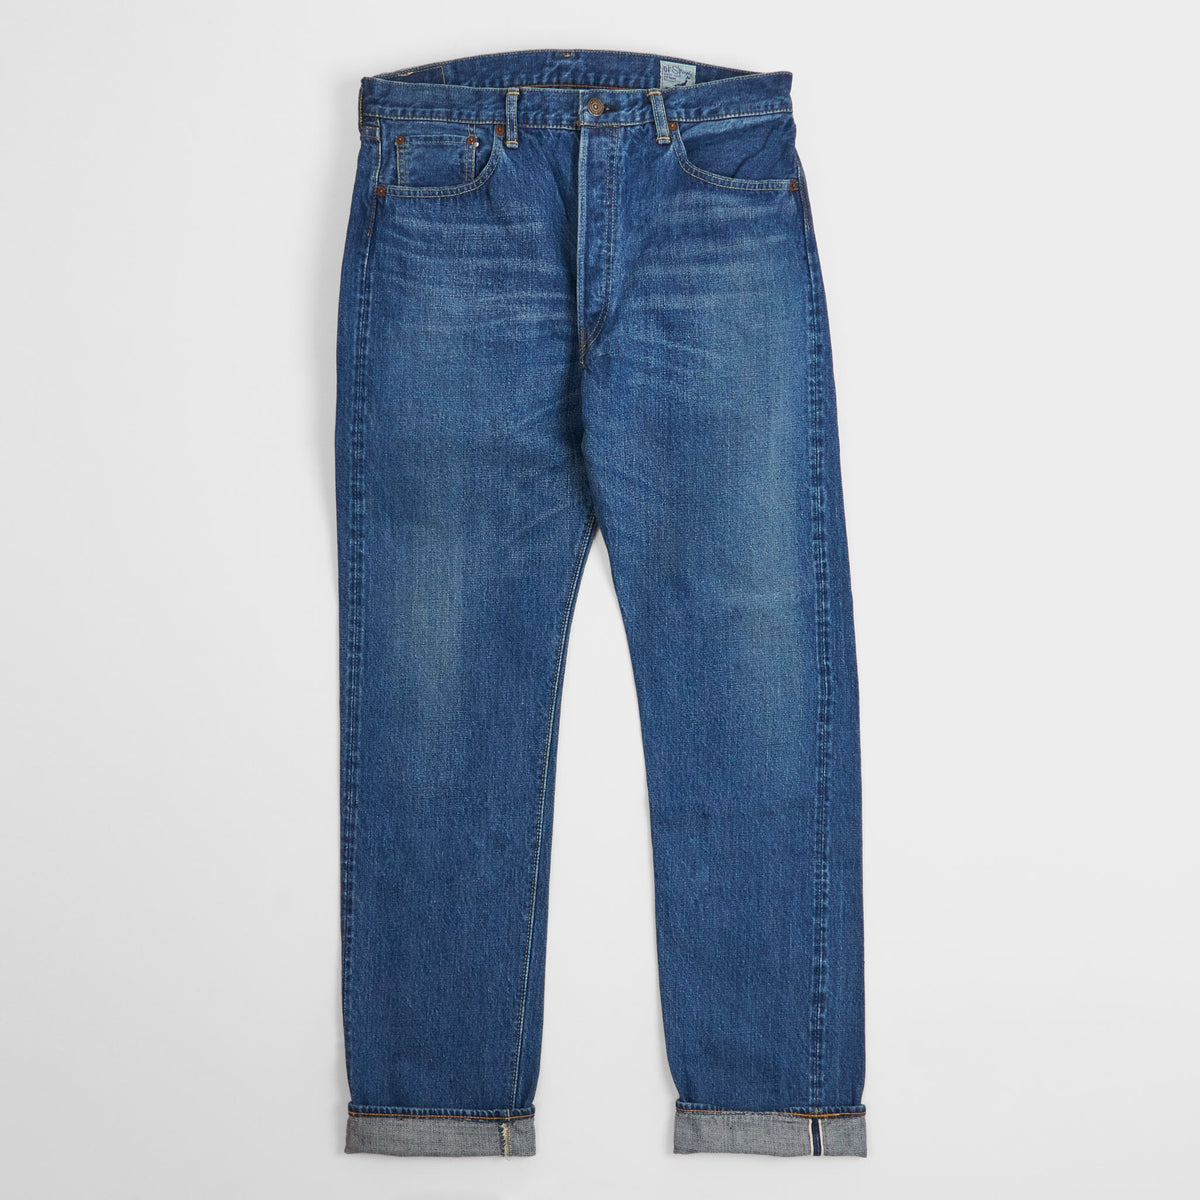 OrSlow 105 Denim Jeans